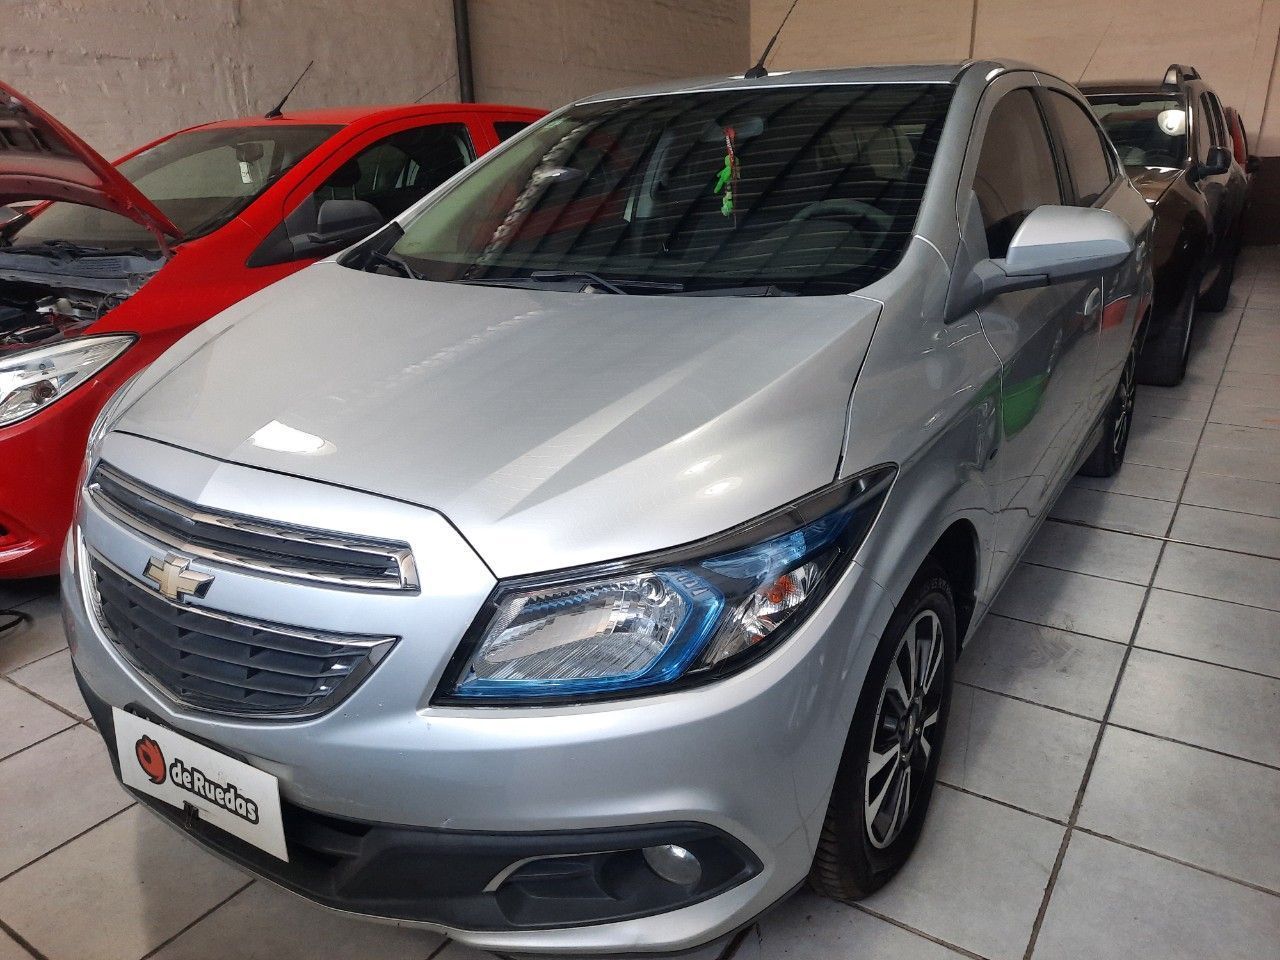 Chevrolet Onix Usado Financiado en Mendoza, deRuedas